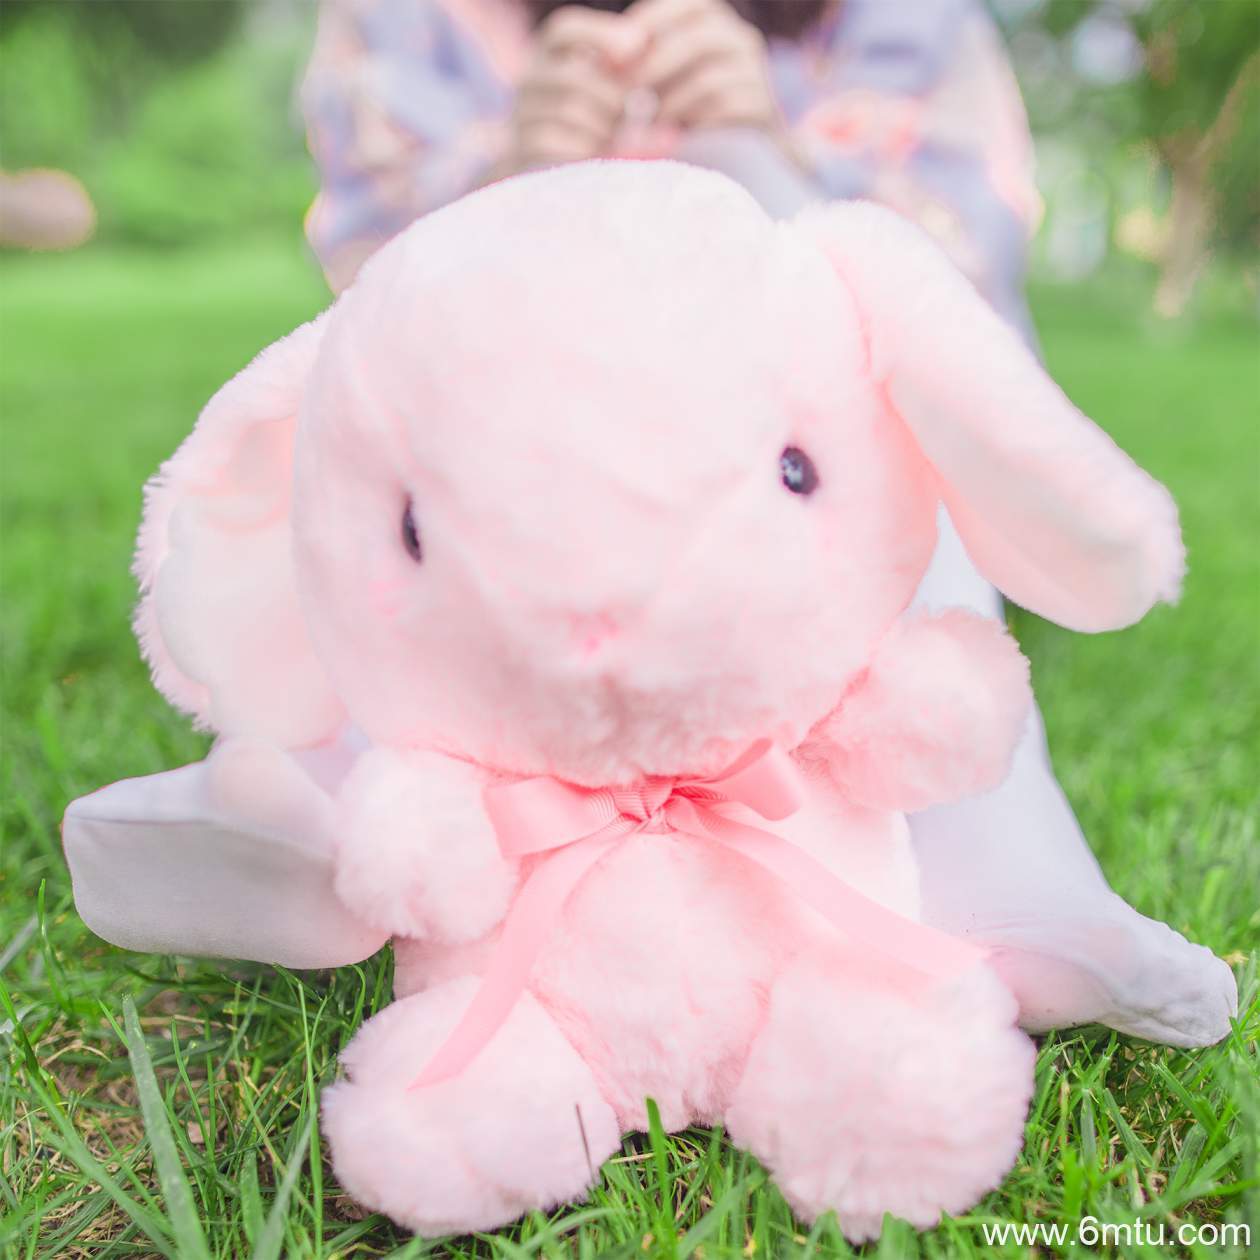 【兔玩映画】白丝美少女兔兔-【62P】 兔玩系列 第6张